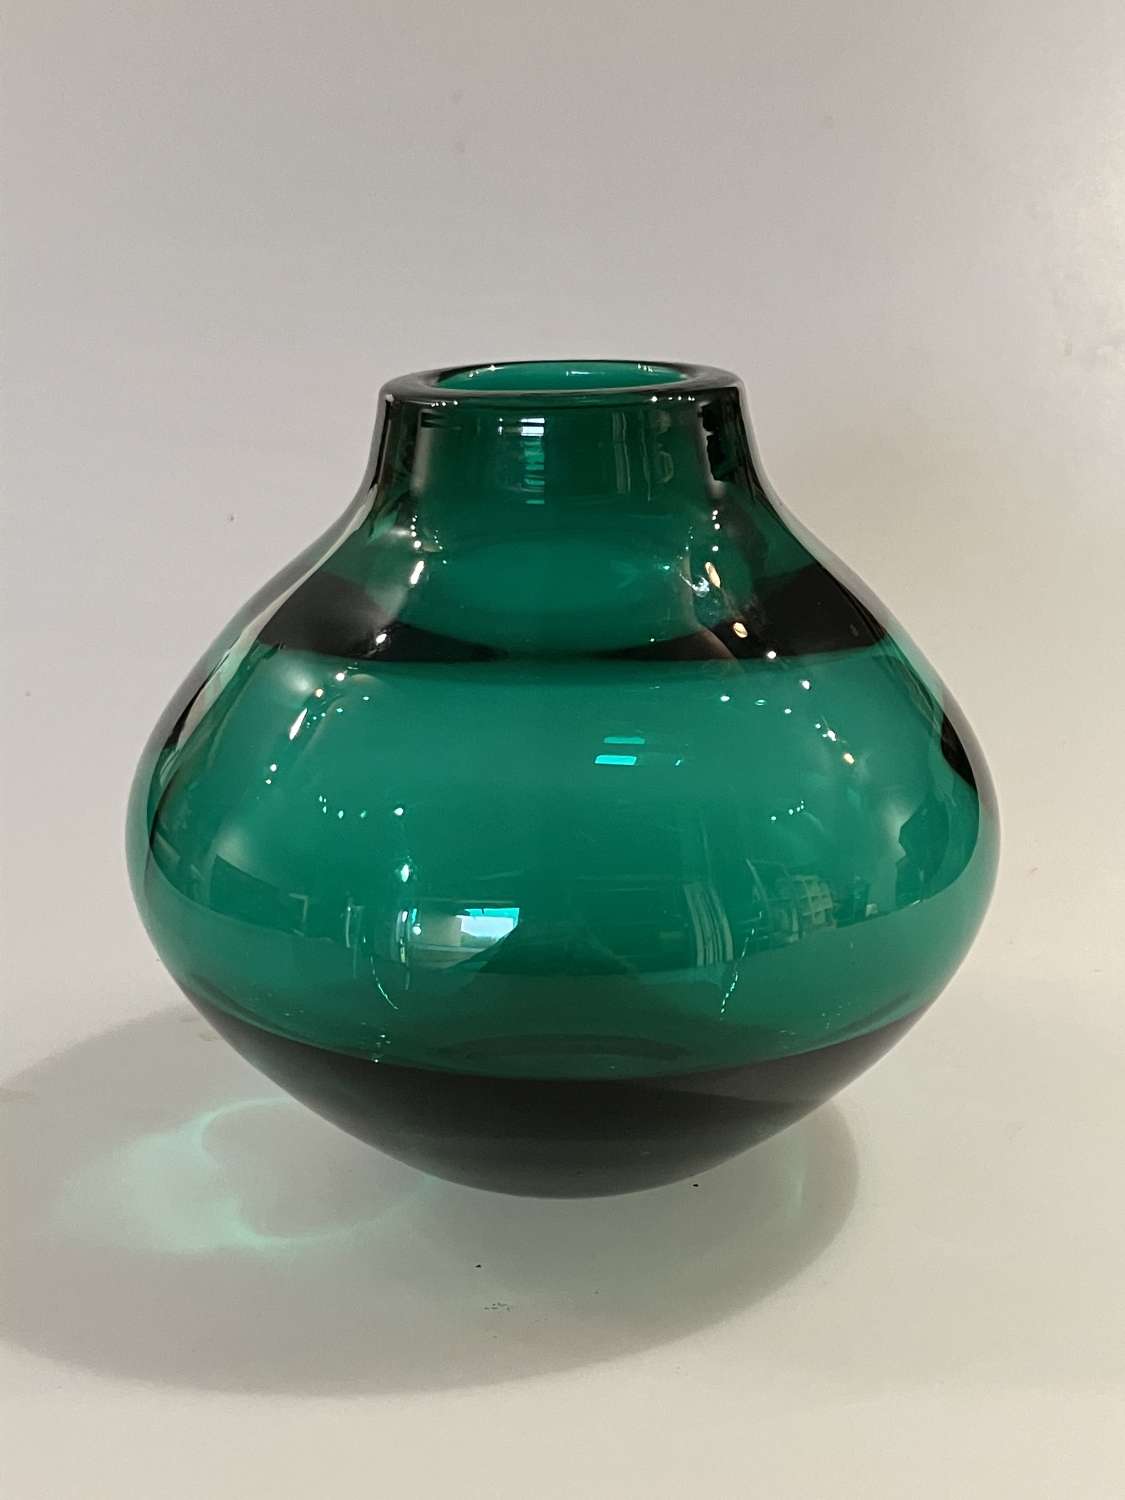 Emerald green Geoffrey Baxter vase